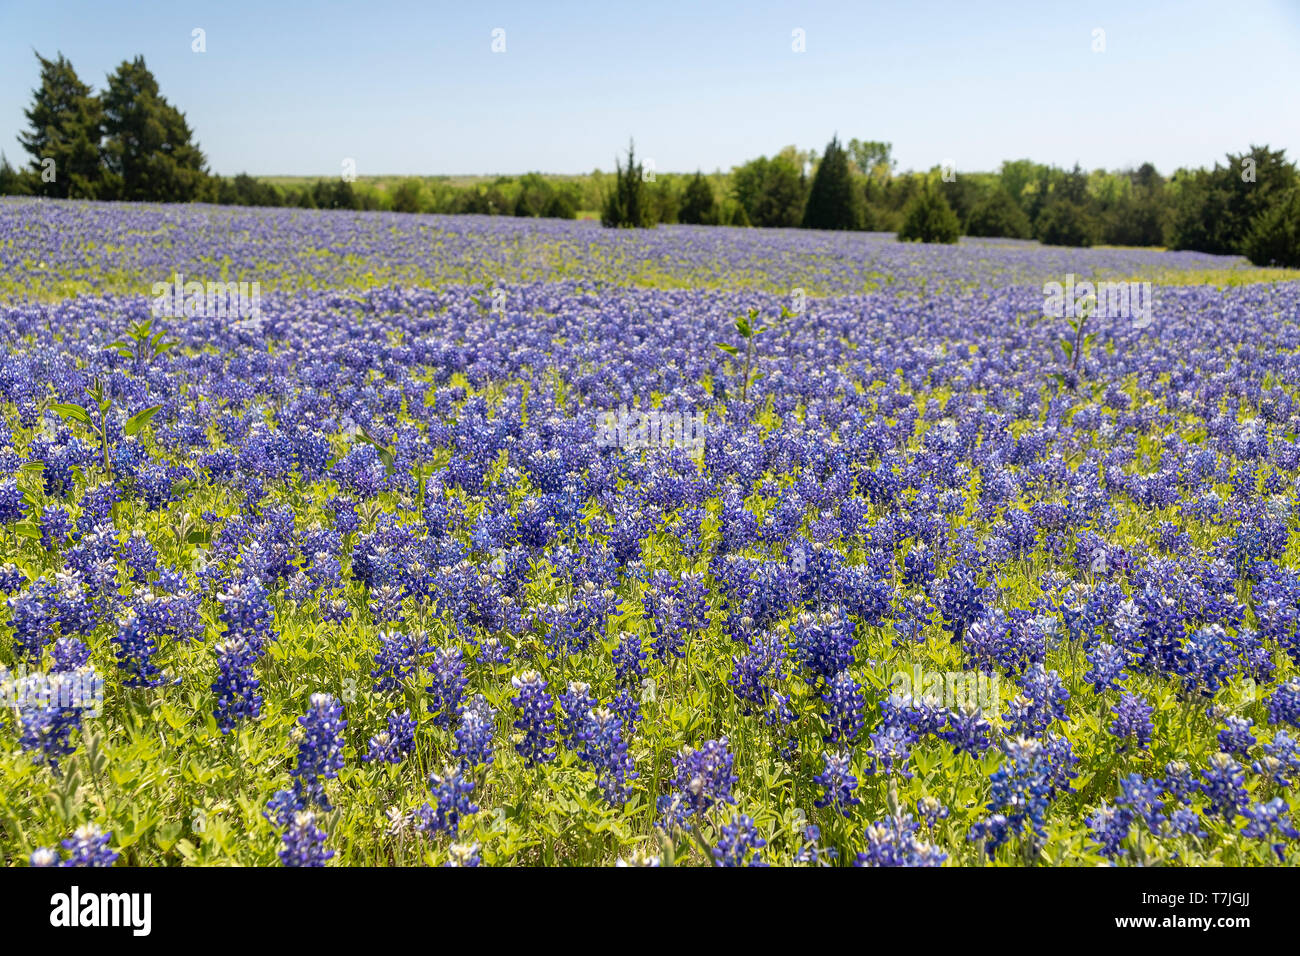 Field of Bluebonnets Stock Photo